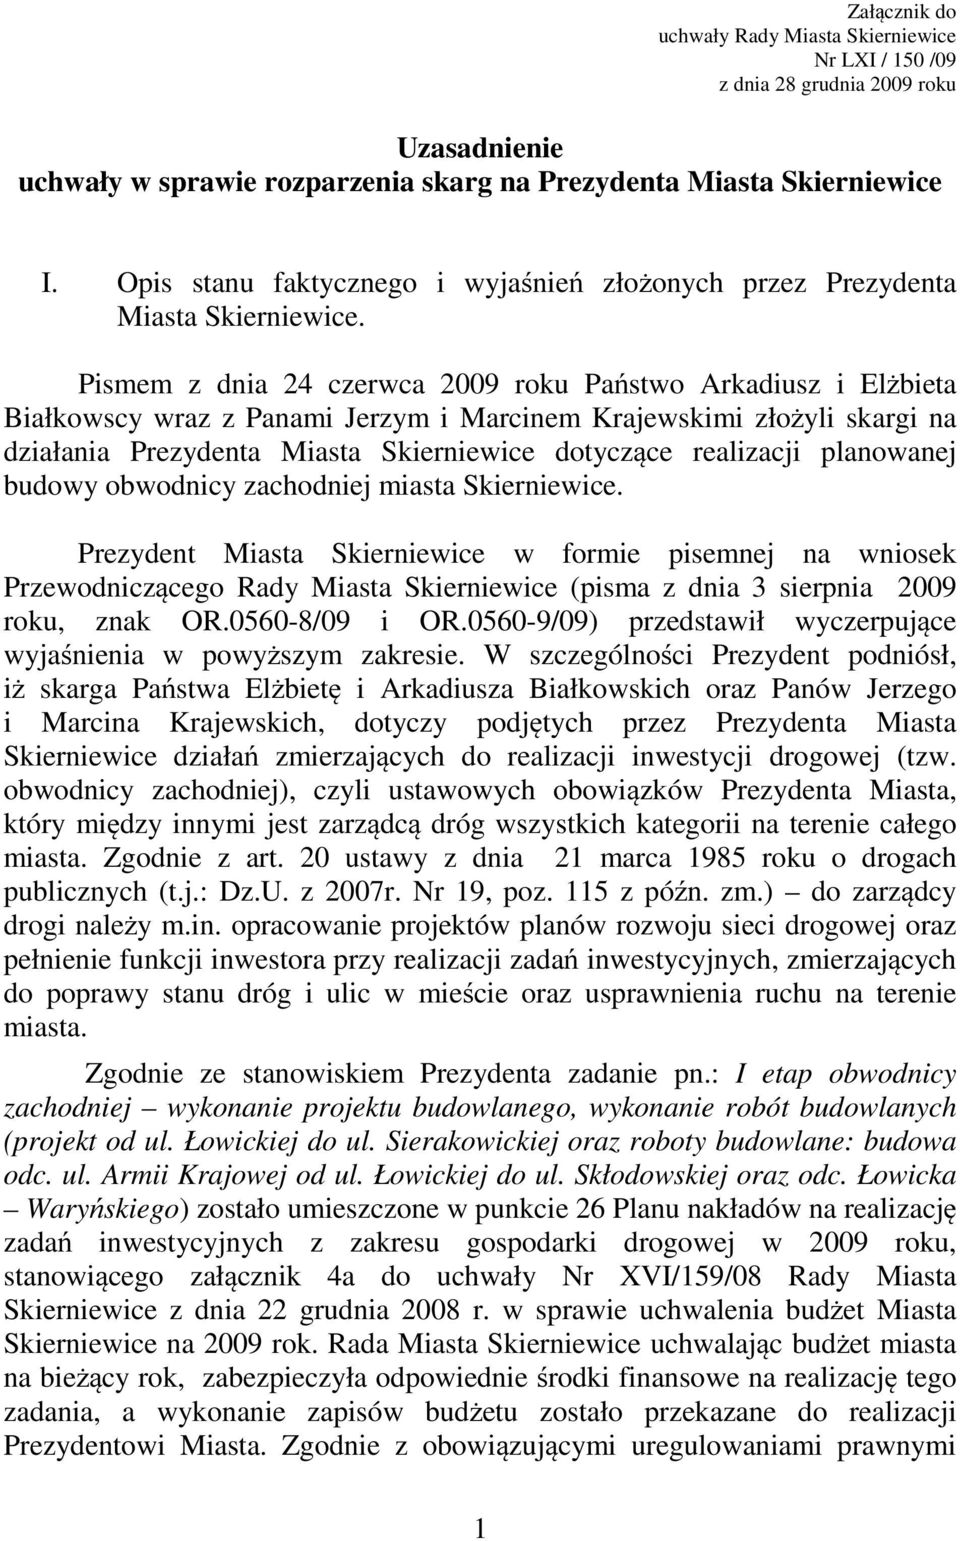 Pismem z dnia 24 czerwca 2009 roku Państwo Arkadiusz i Elżbieta Białkowscy wraz z Panami Jerzym i Marcinem Krajewskimi złożyli skargi na działania Prezydenta Miasta Skierniewice dotyczące realizacji